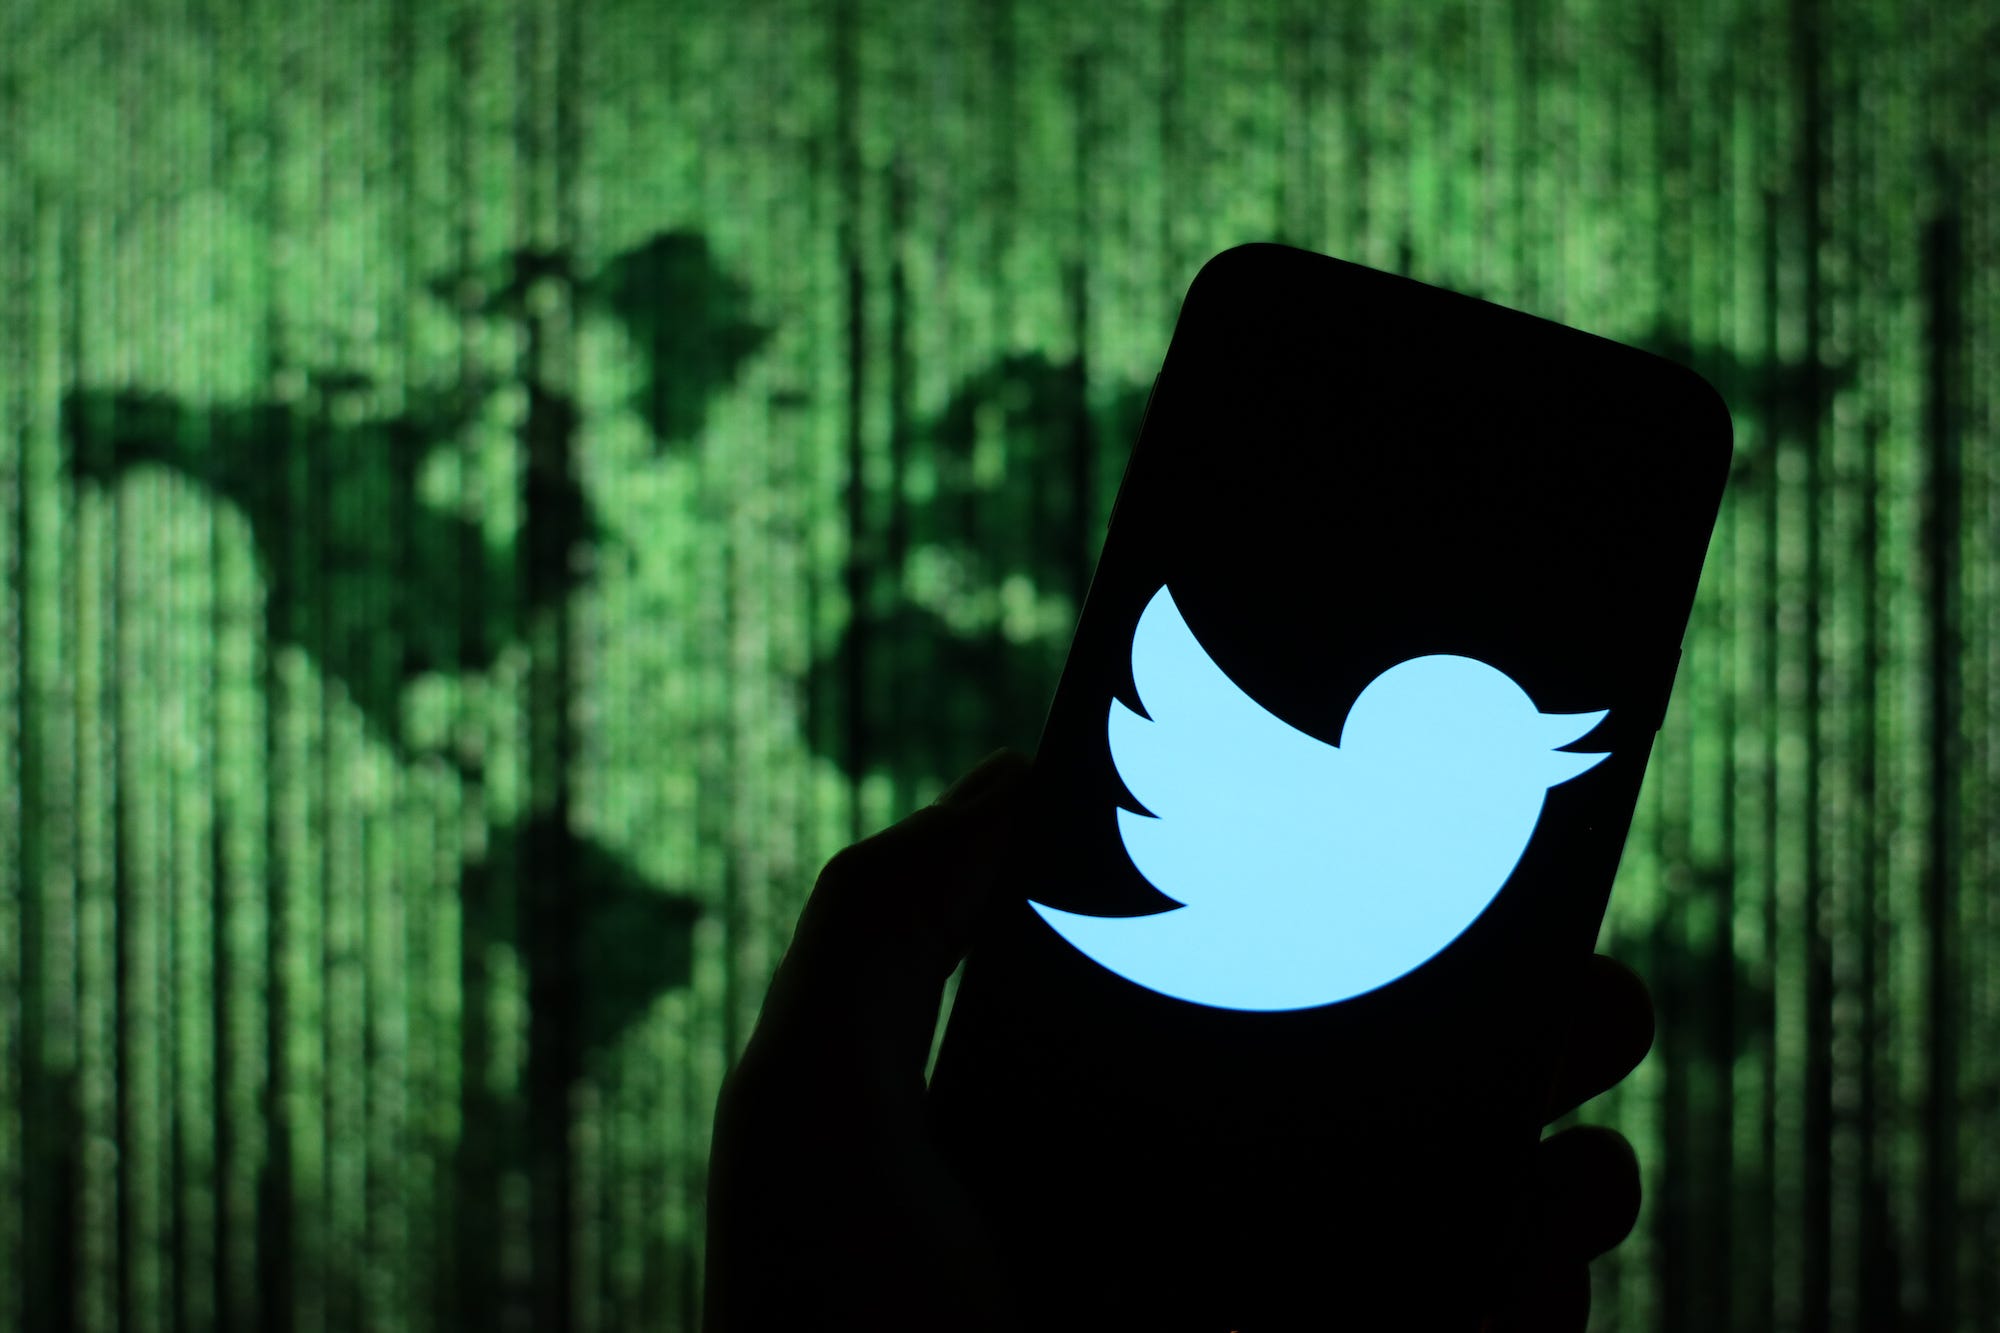 Veel van de misleidende berichten die bij de Twitter-aanval werden geplaatst waren zo herkenbaar dat de meeste binnen enkele minuten weer werden verwijderd